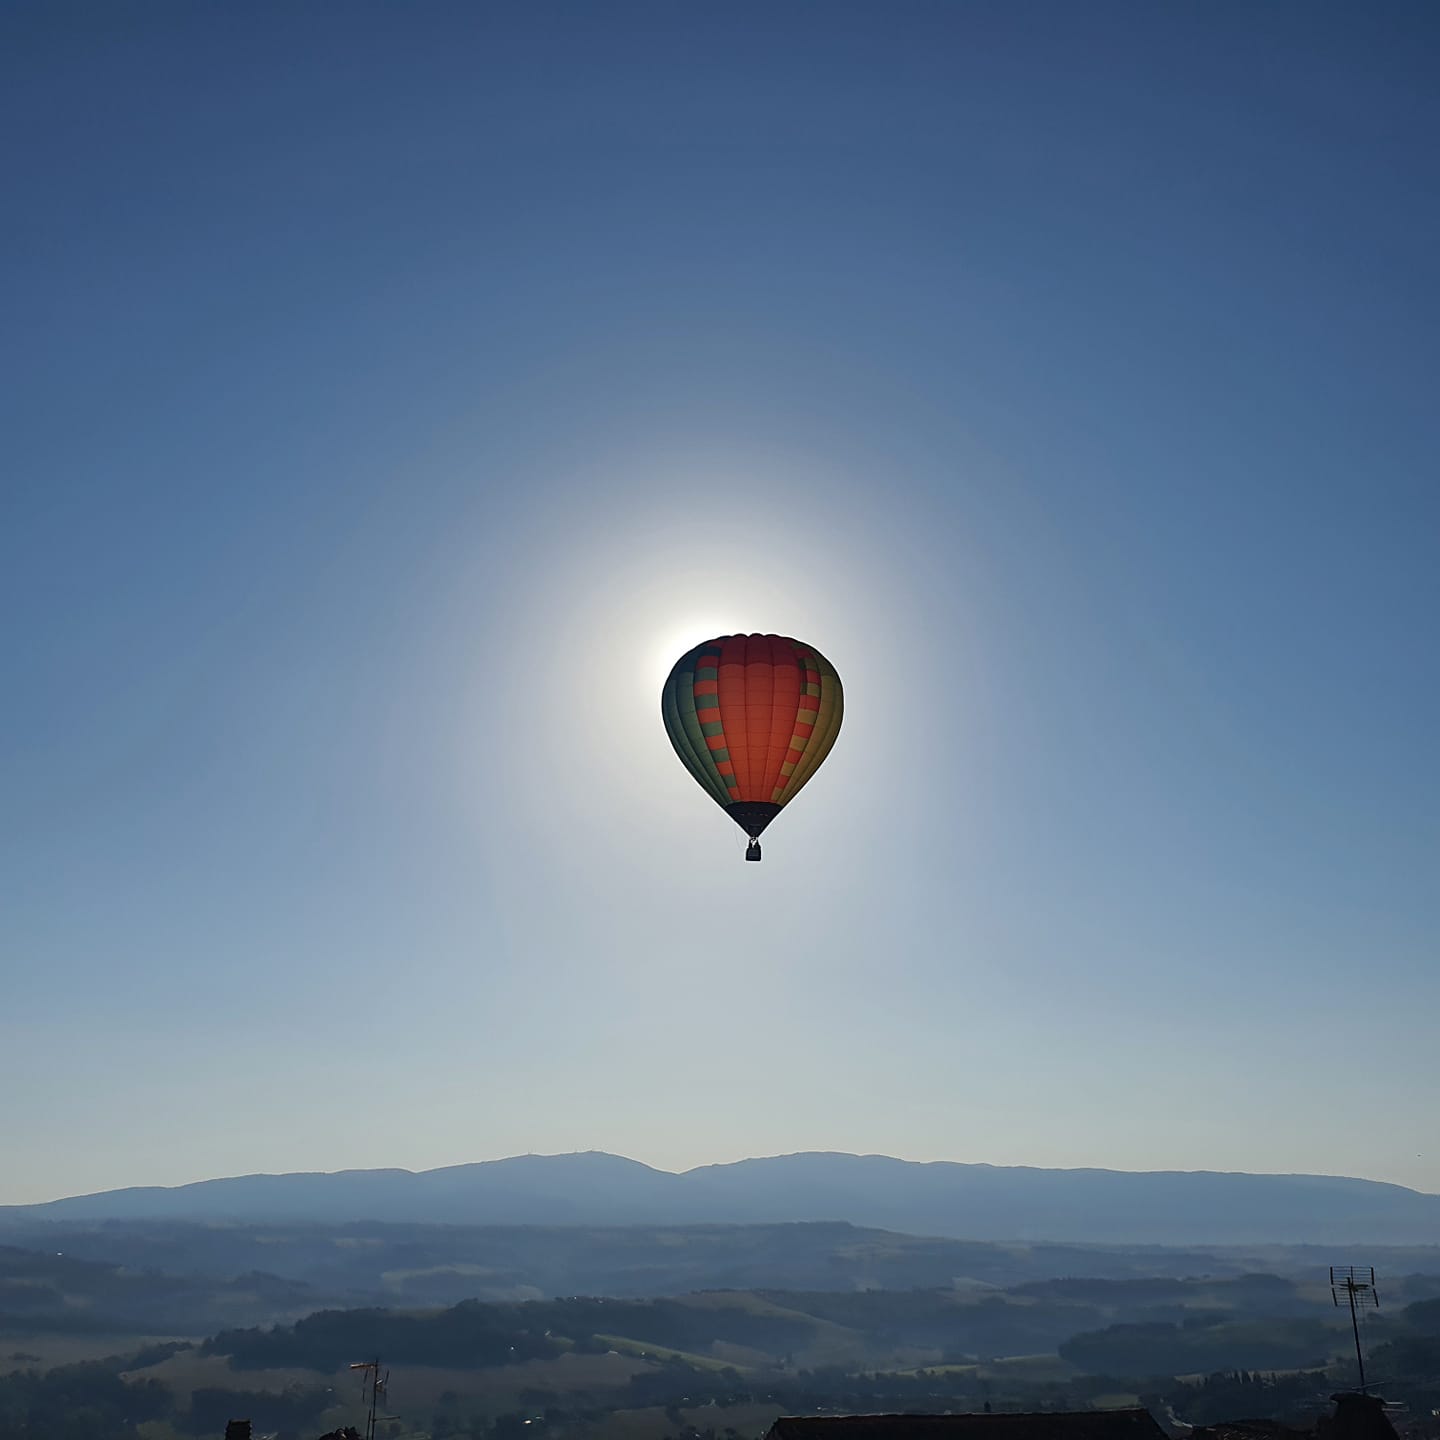 Hotel Fonte Cesia - mongolfiere todi - gran premio mongolfieristico -Italian International Balloon Grand Prix